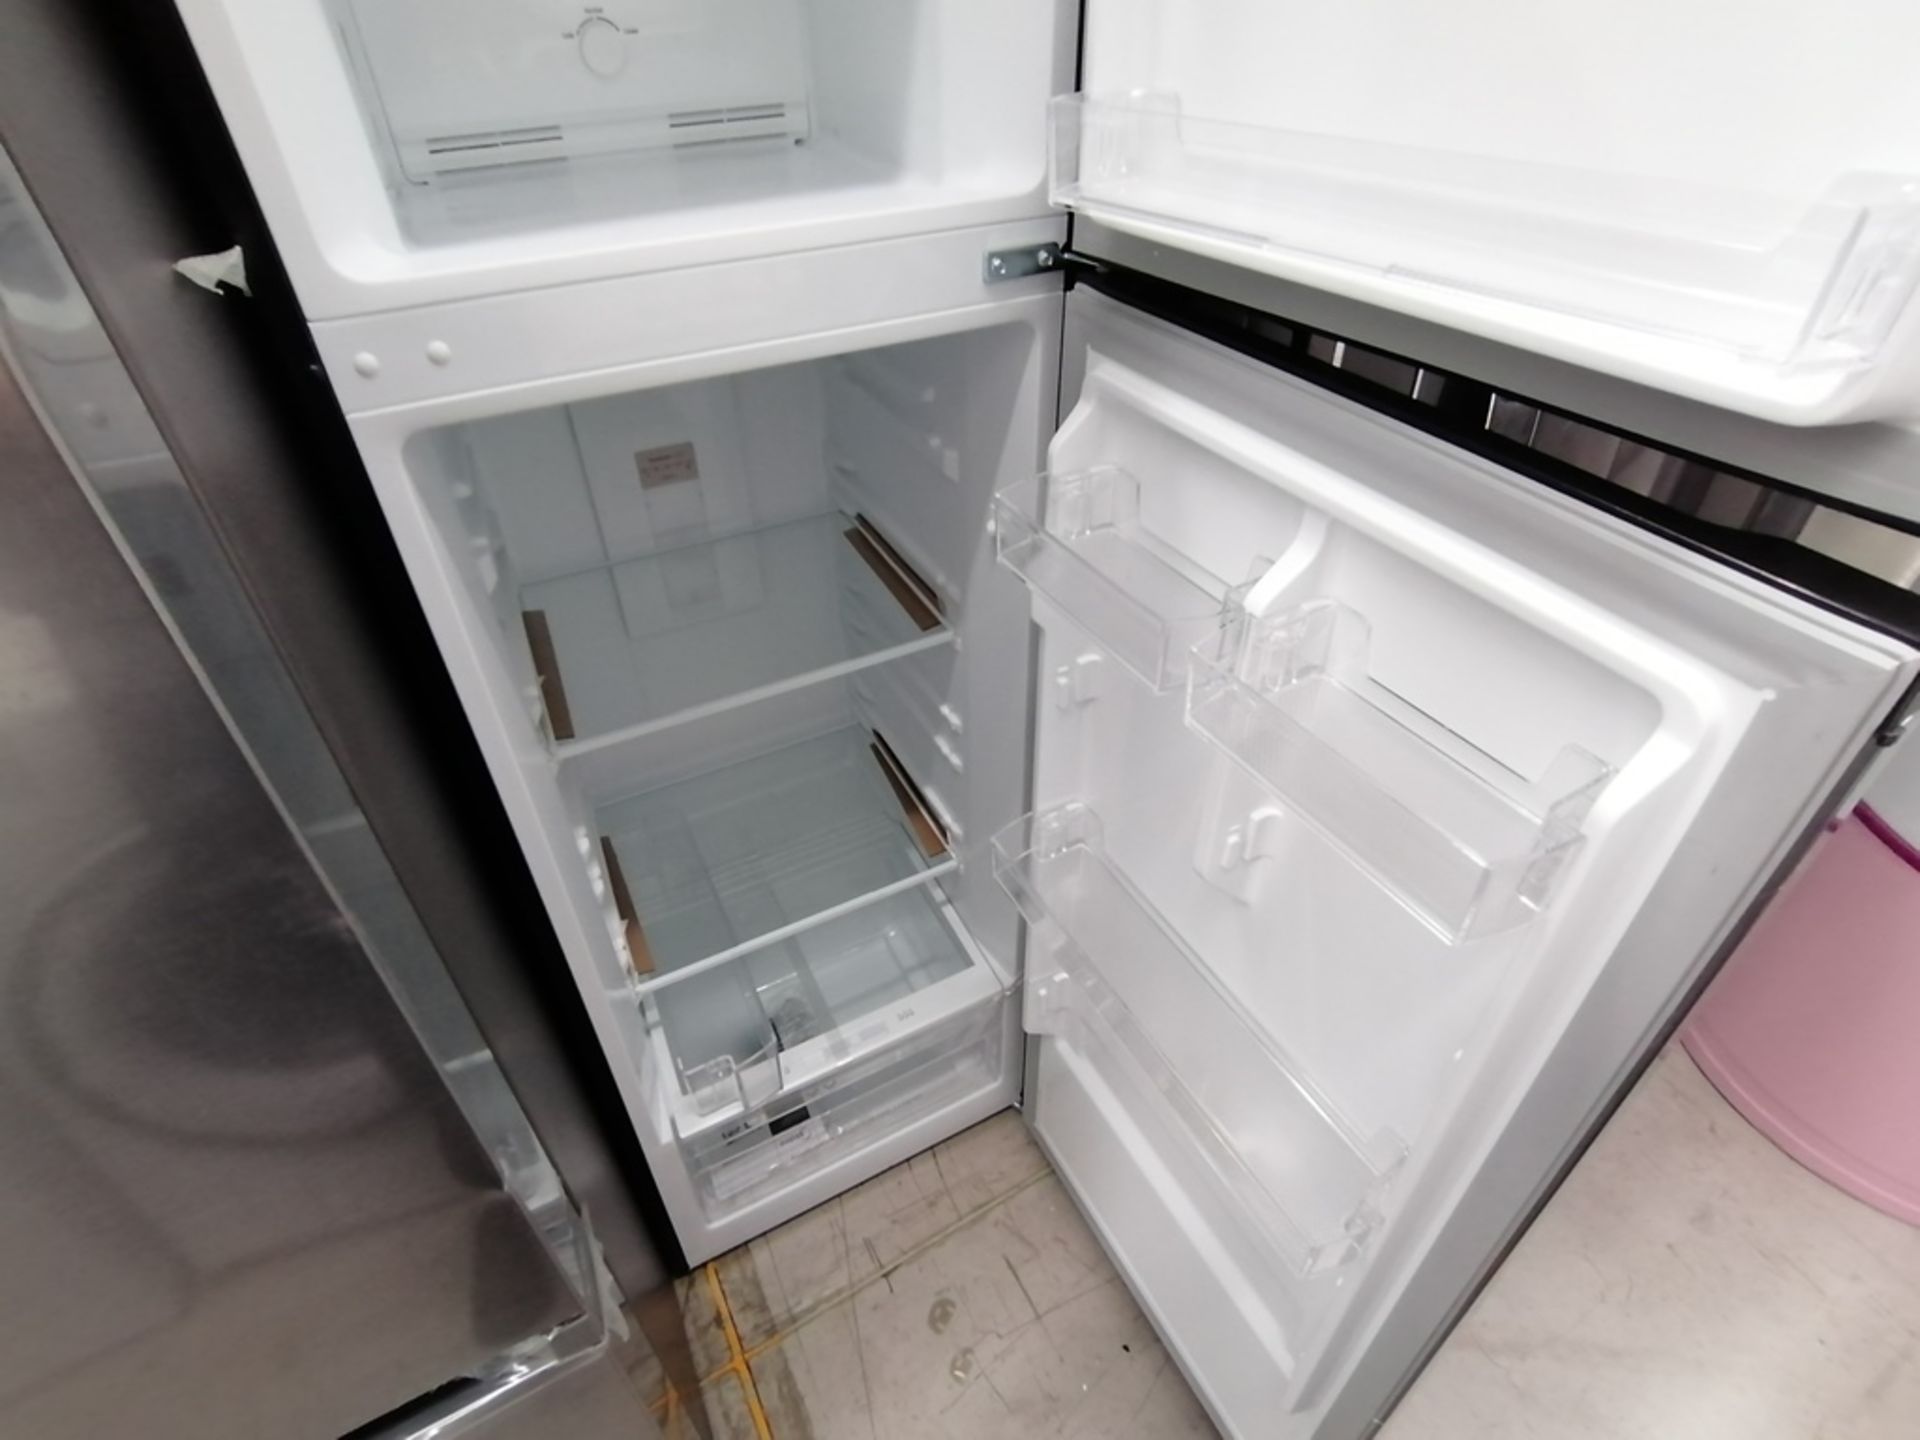 Lote de 2 refrigeradores incluye: 1 Refrigerador, Marca Midea, Modelo MRTN09G2NCS, Serie 341B261870 - Image 5 of 15